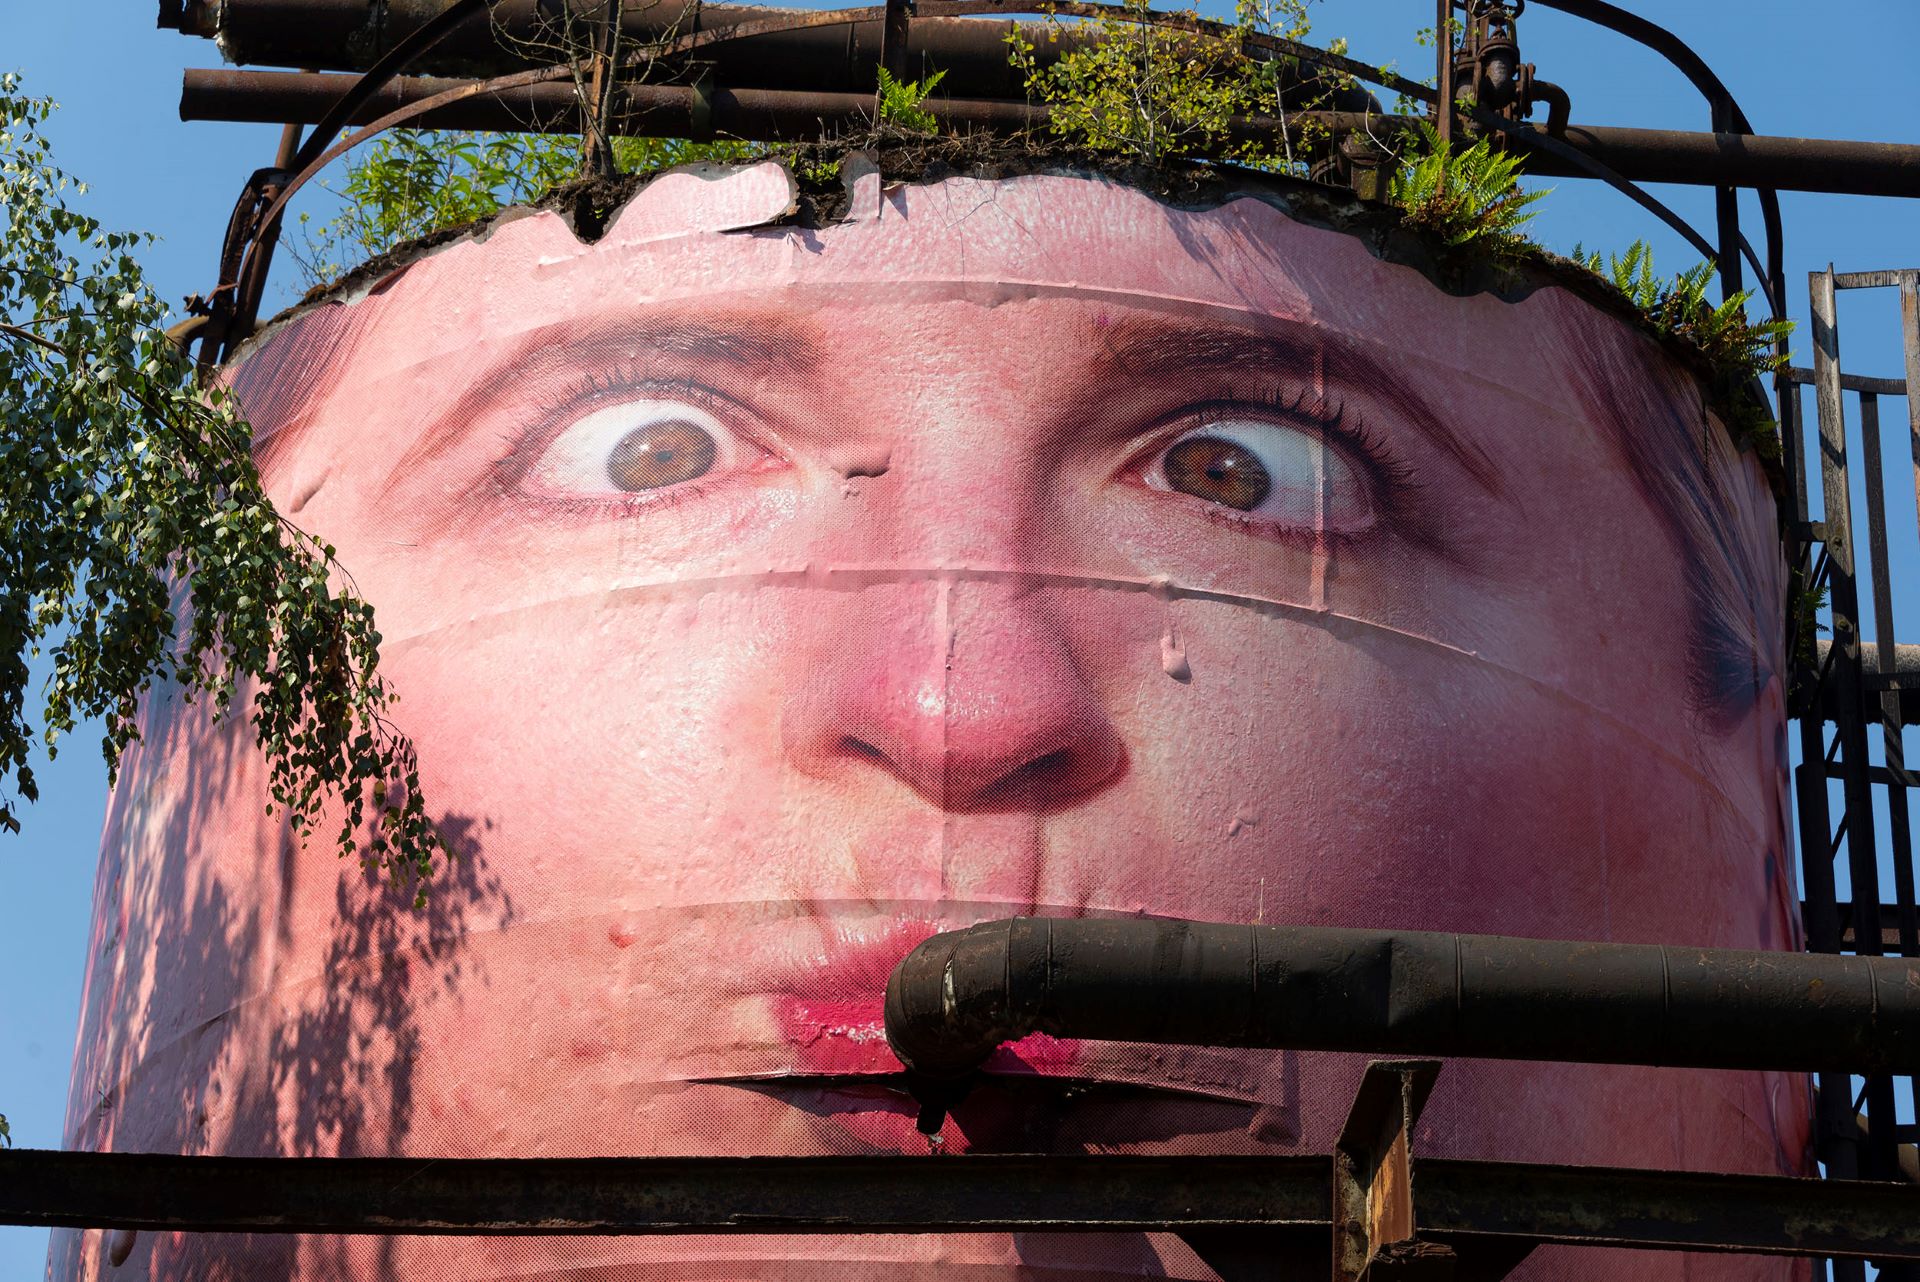 Sur le terrain de la cabane se trouve une immense installation d'art urbain sous la forme d'une peinture de visage de type BD.